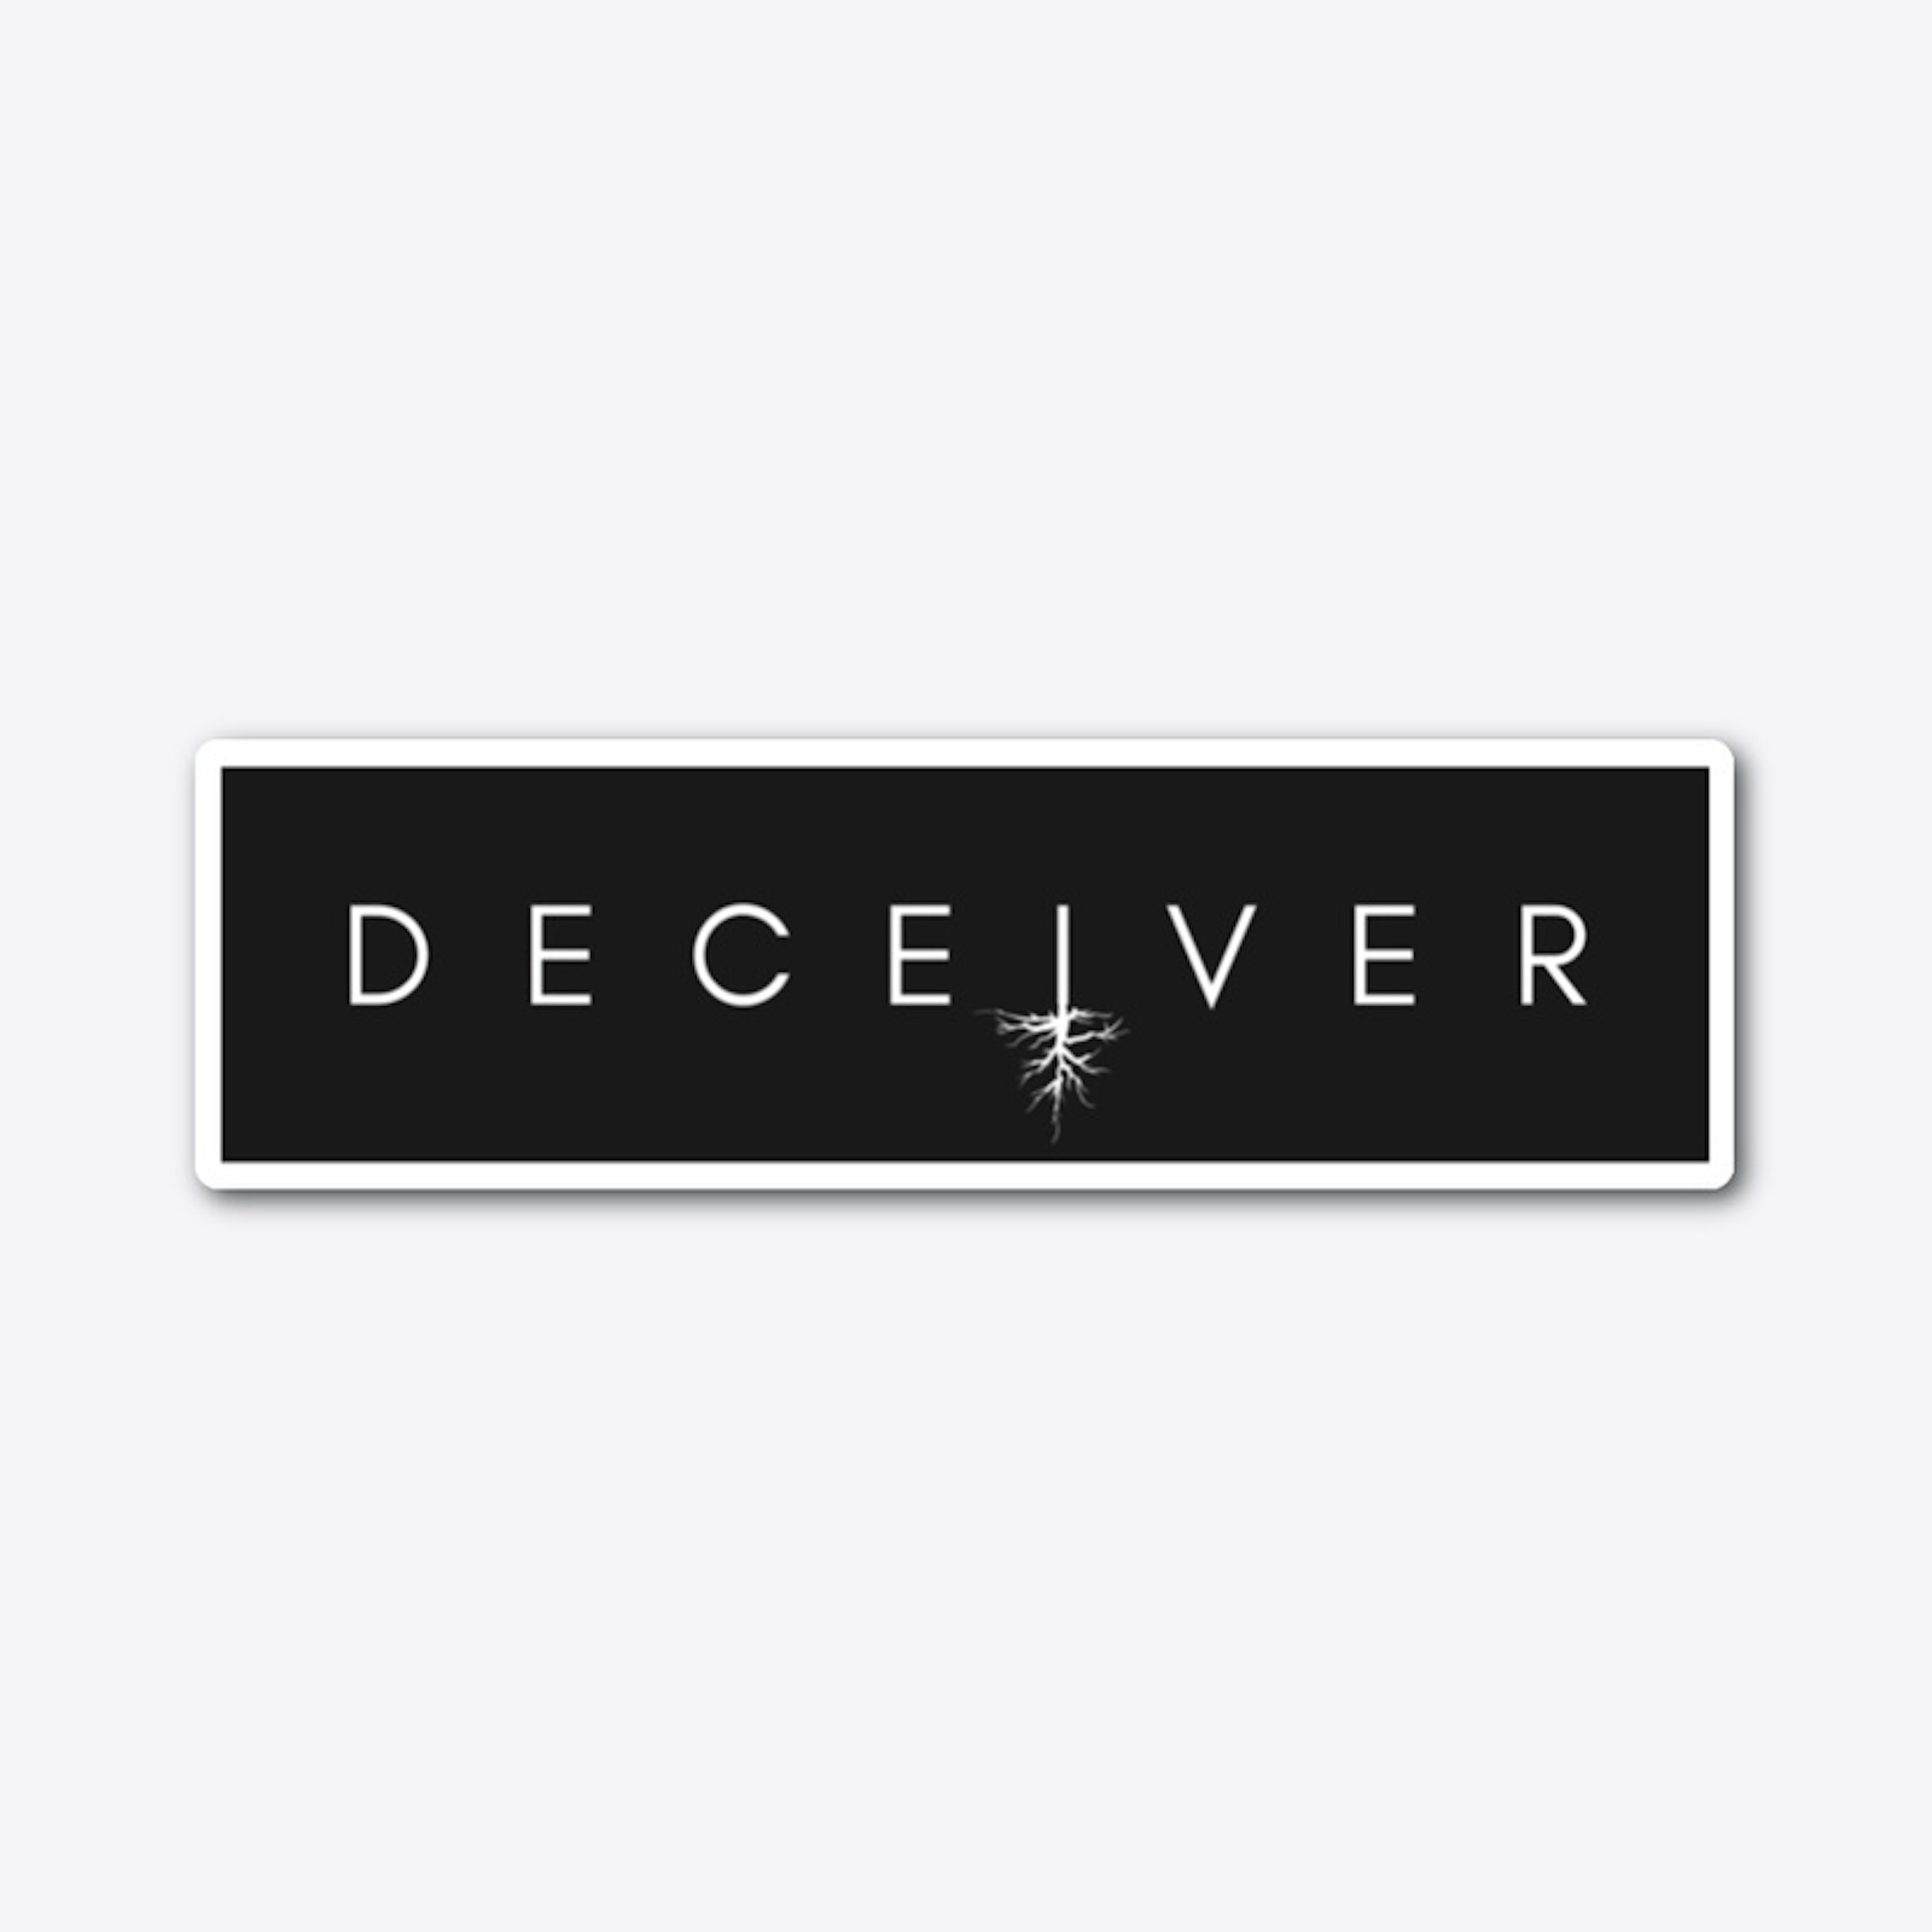 Deceiver Sticker